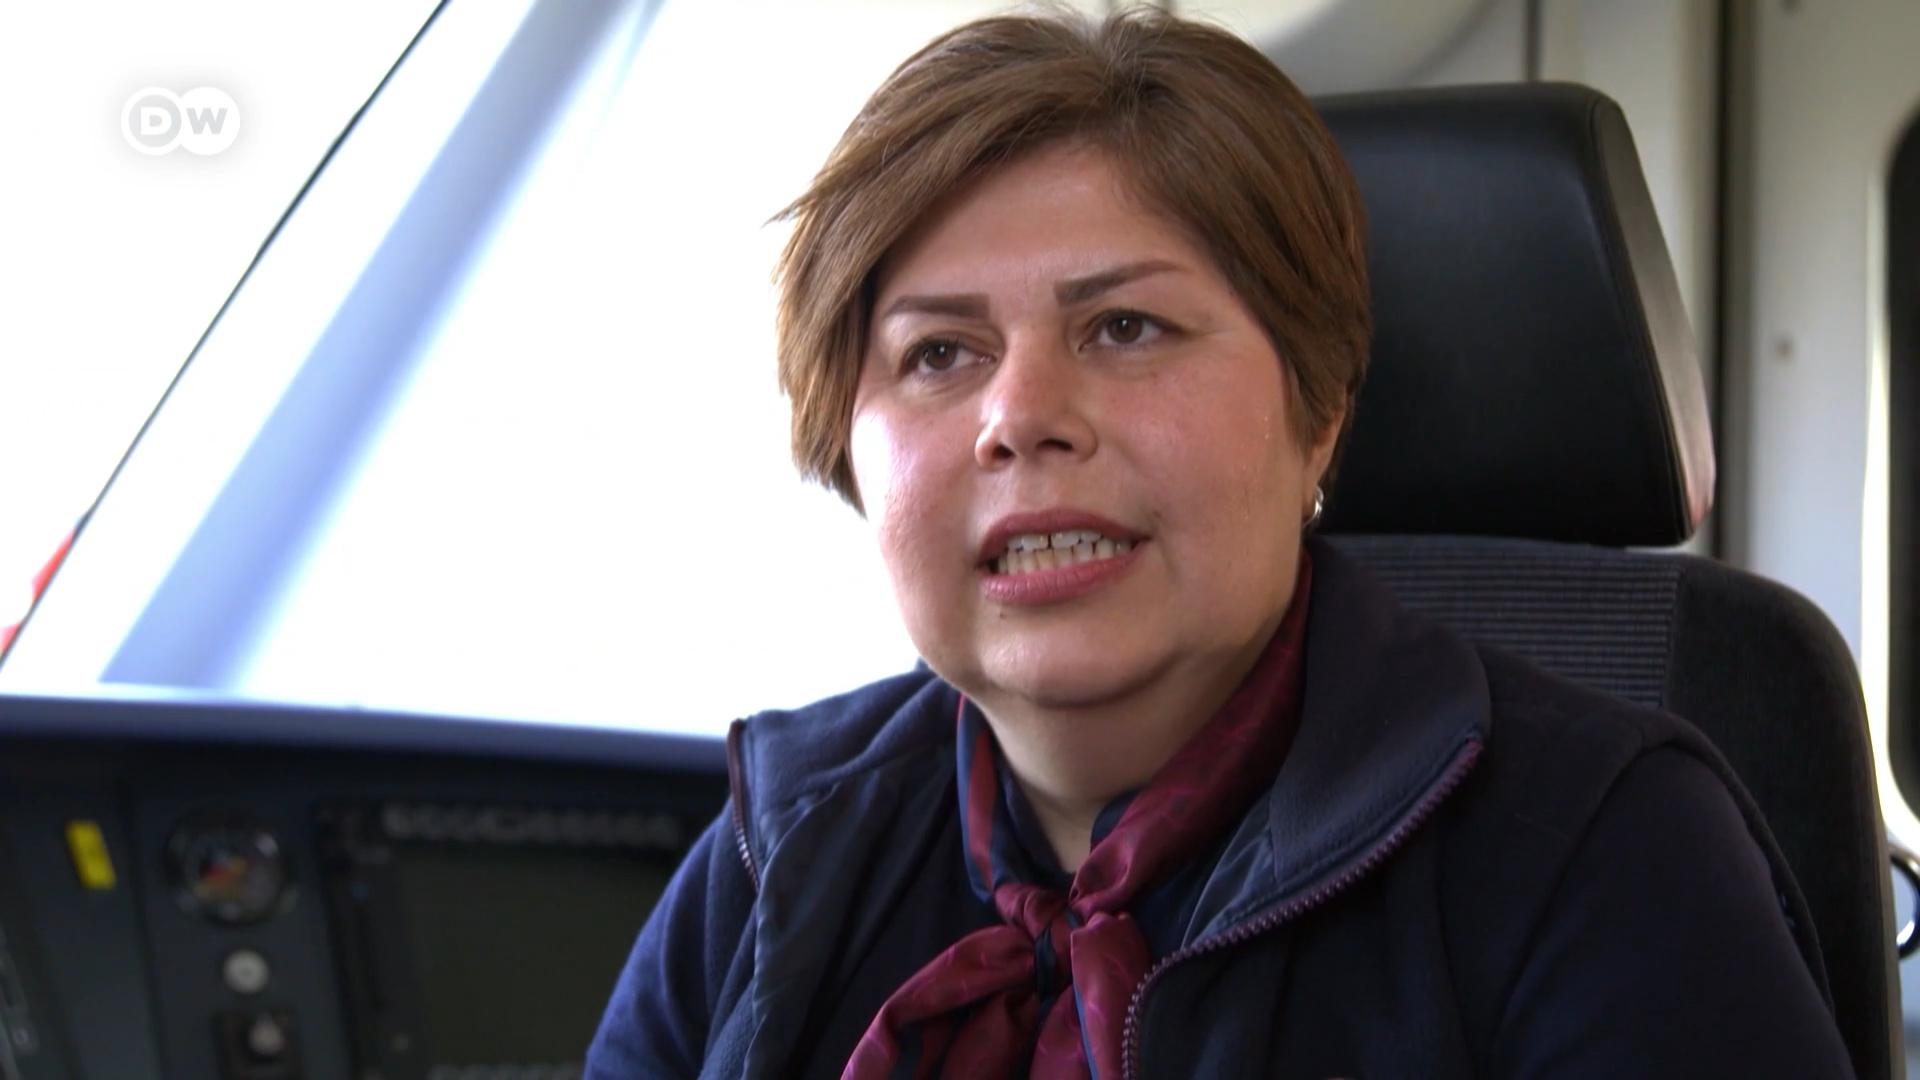 伊朗妇女索尼娅在流亡德国多年后，实现了自己的梦想。她将成为德铁火车司机。德国目前正缺乏像索尼娅这样的技术人才。